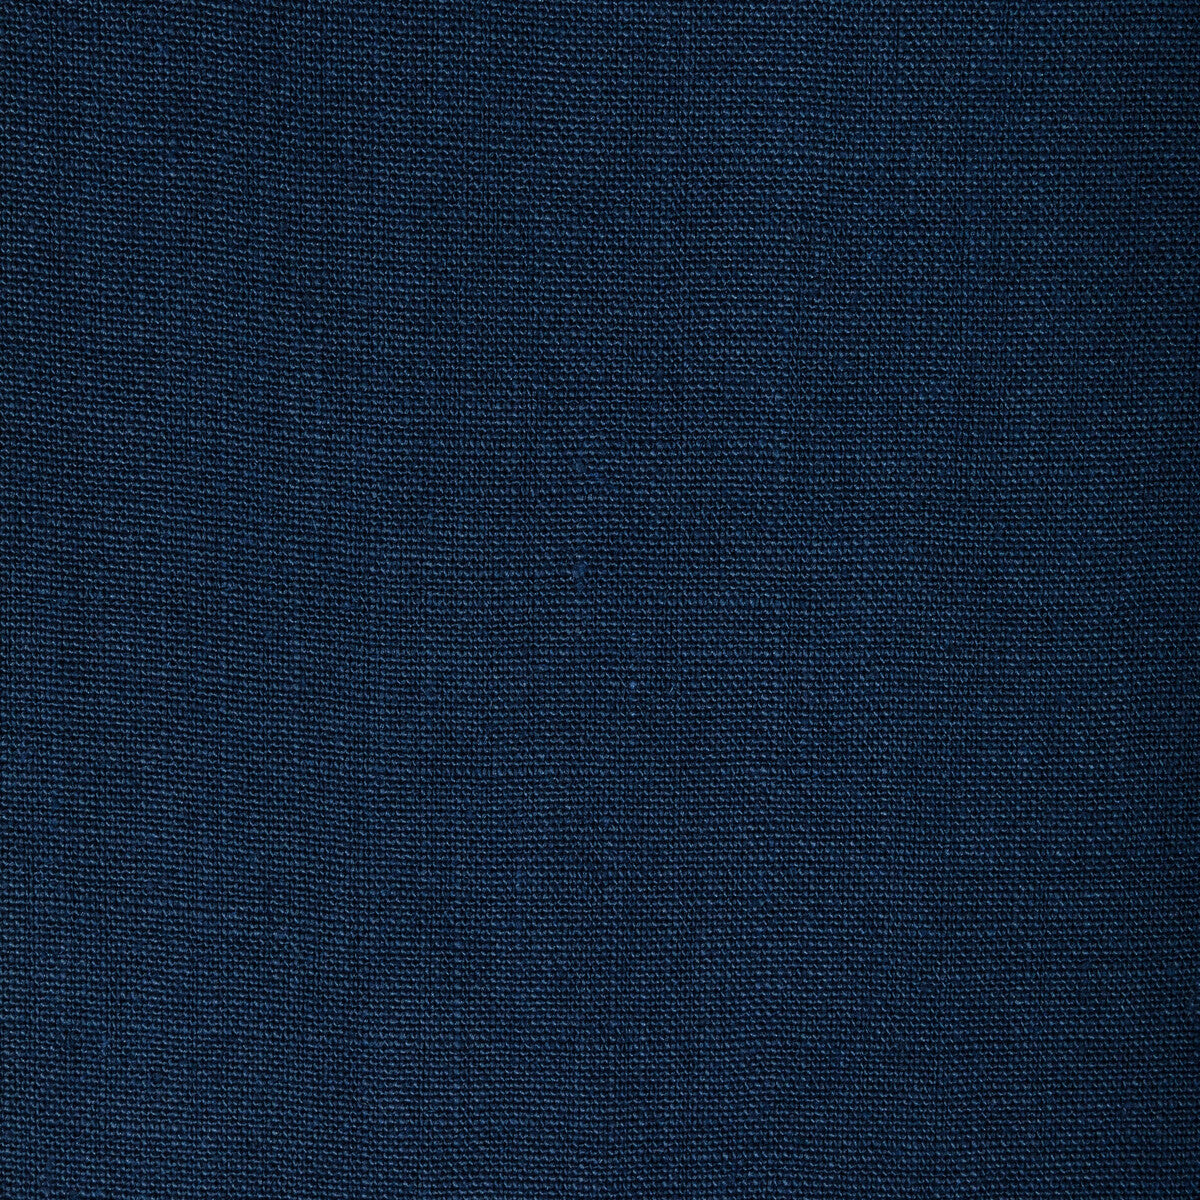 Kravet Basics fabric in 36332-50 color - pattern 36332.50.0 - by Kravet Basics